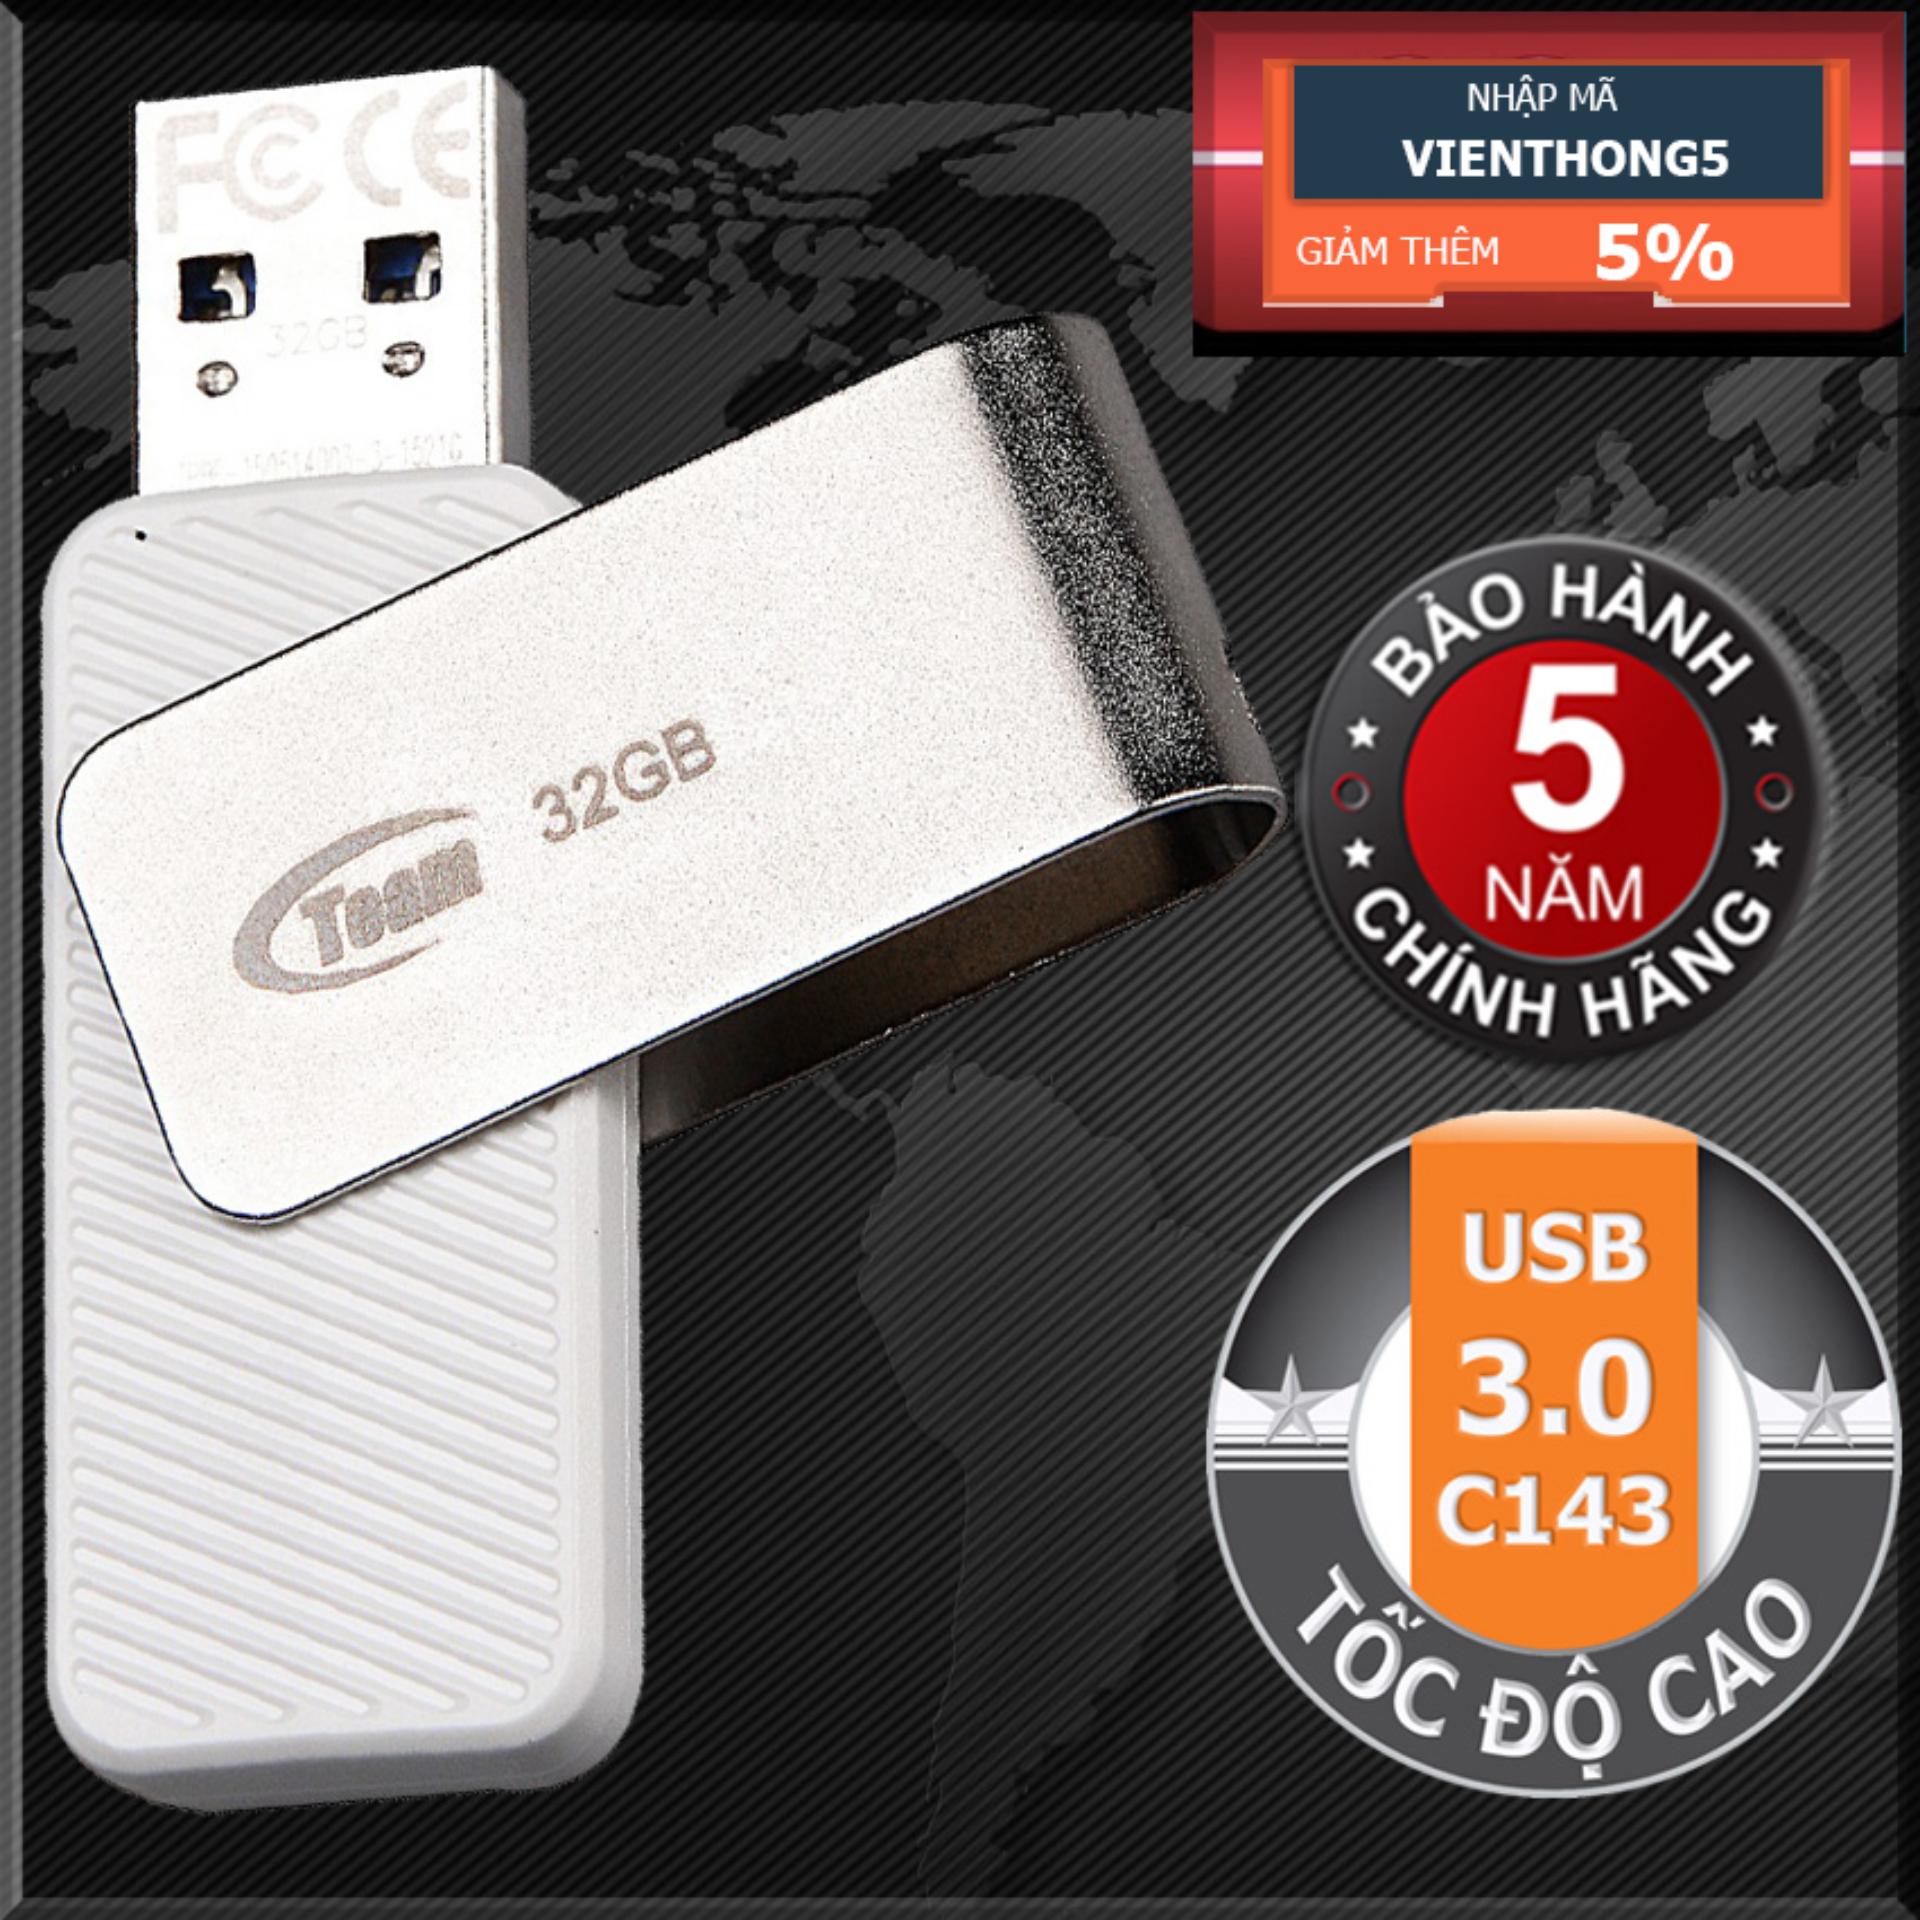 USB 3.0 32GB Team Group INC C143 (Trắng) Tốc độ cao - Hãng phân phối chính thức